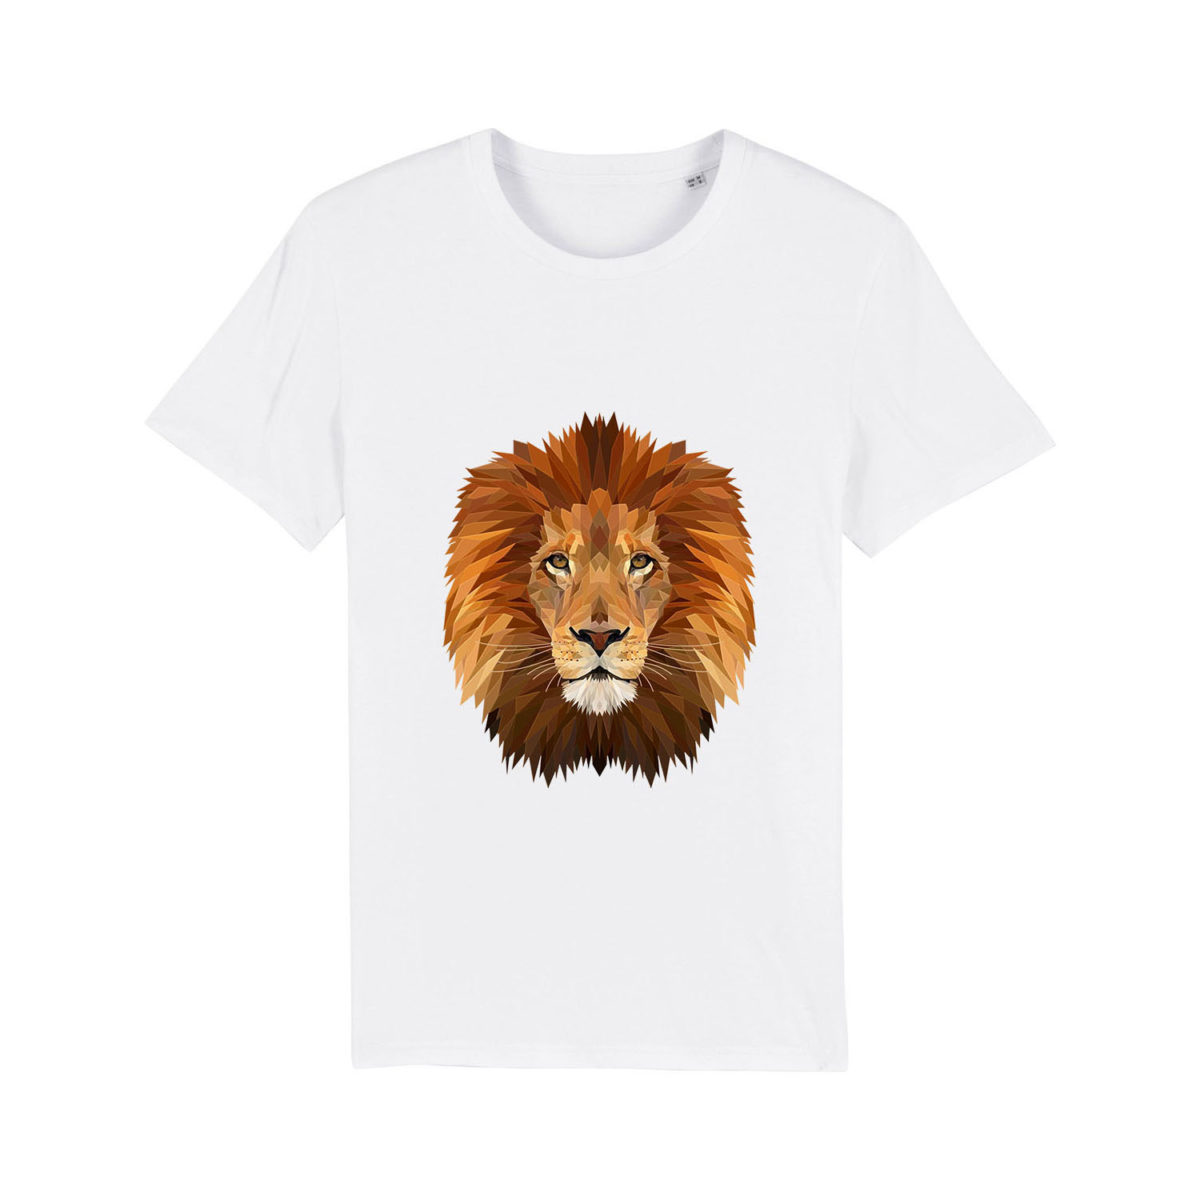 T-shirt – “Panthera Leo”